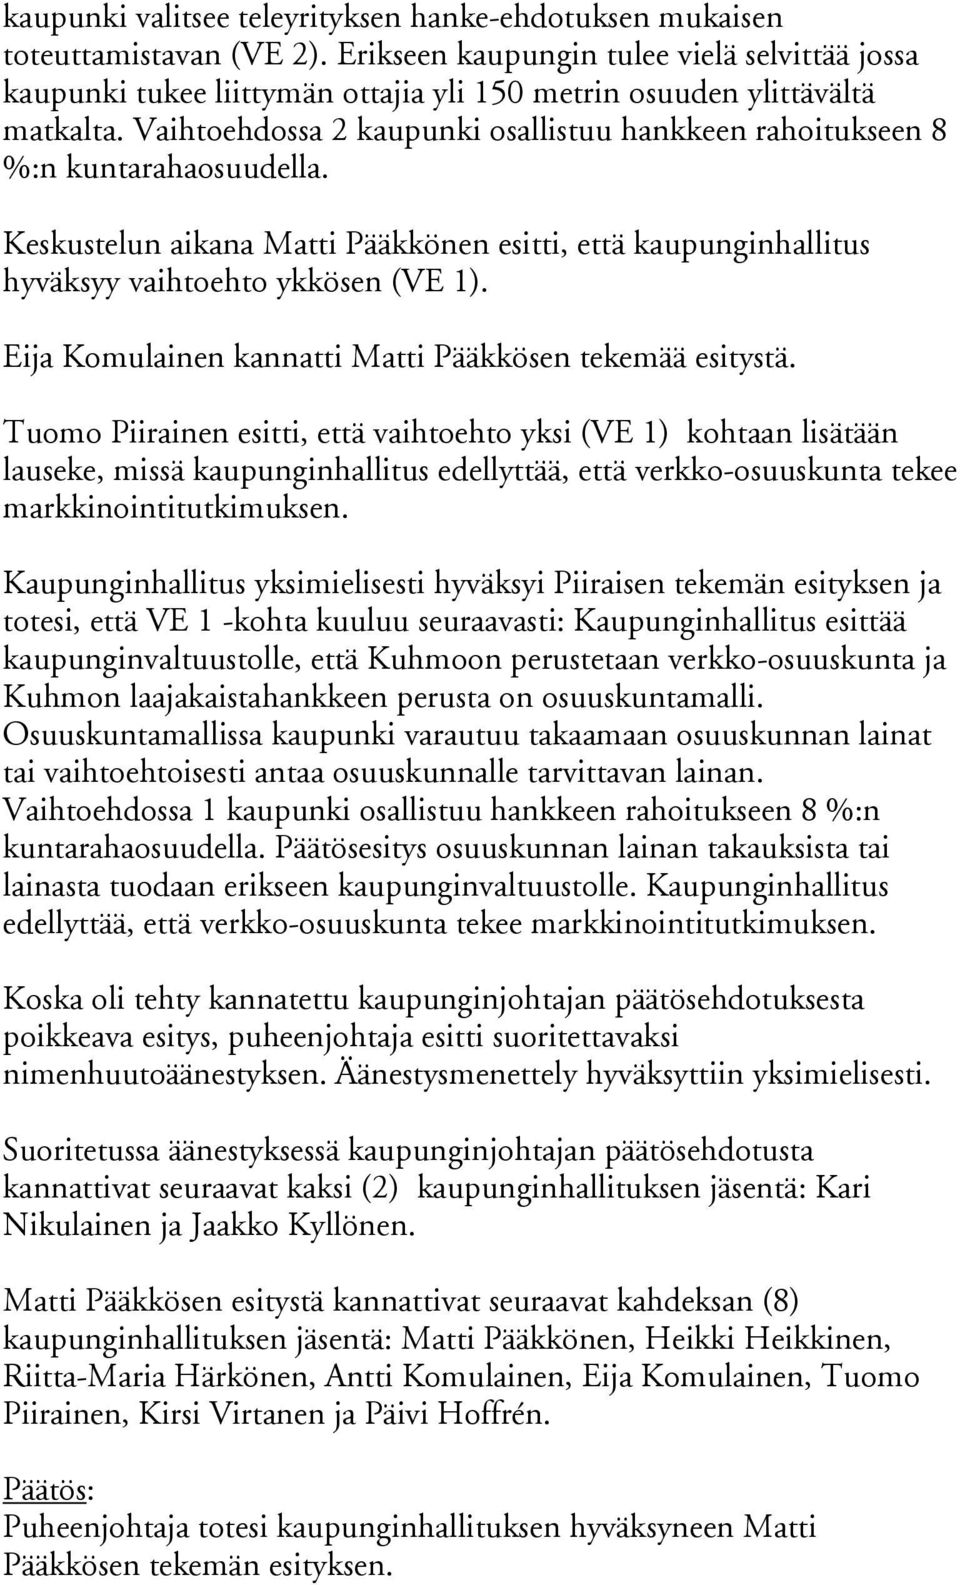 Vaihtoehdossa 2 kaupunki osallistuu hankkeen rahoitukseen 8 %:n kuntarahaosuudella. Keskustelun aikana Matti Pääkkönen esitti, että kaupunginhallitus hyväksyy vaihtoehto ykkösen (VE 1).